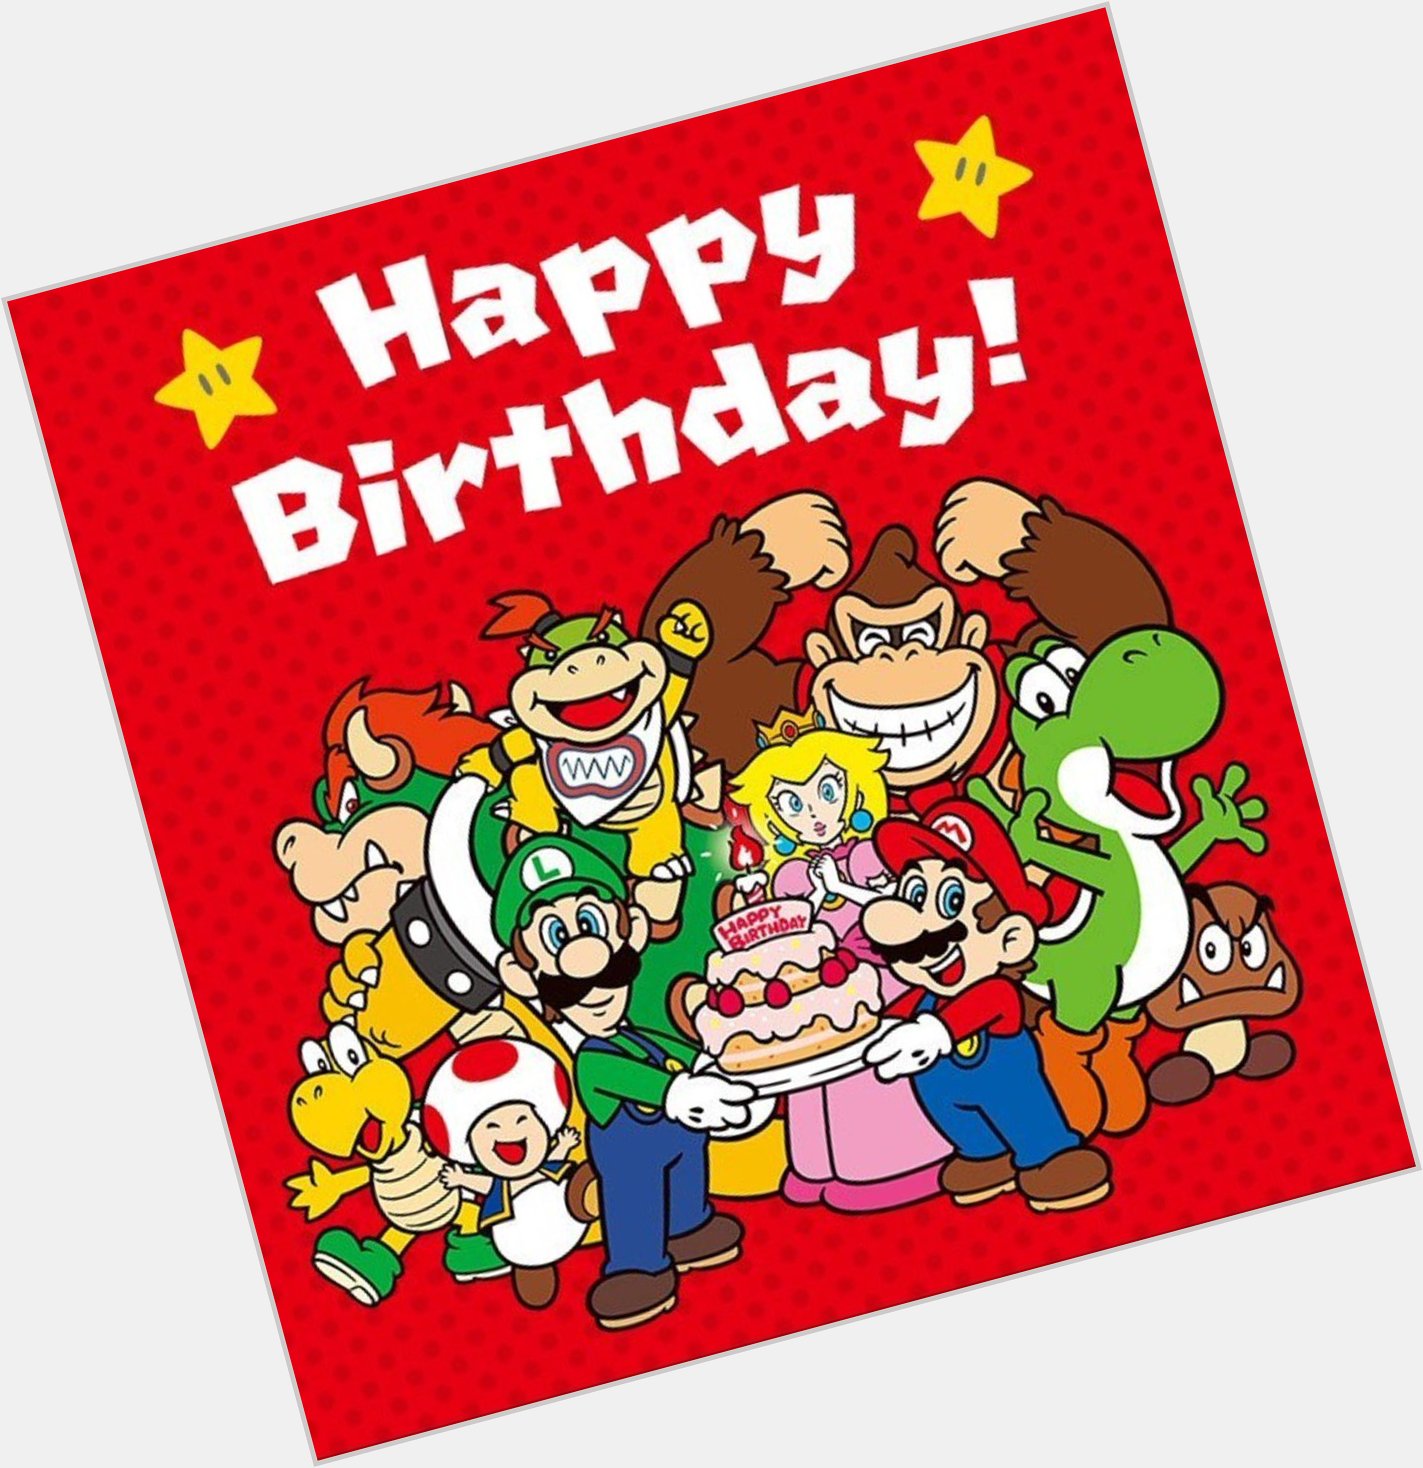  Happy birthday Shigeru Miyamoto   